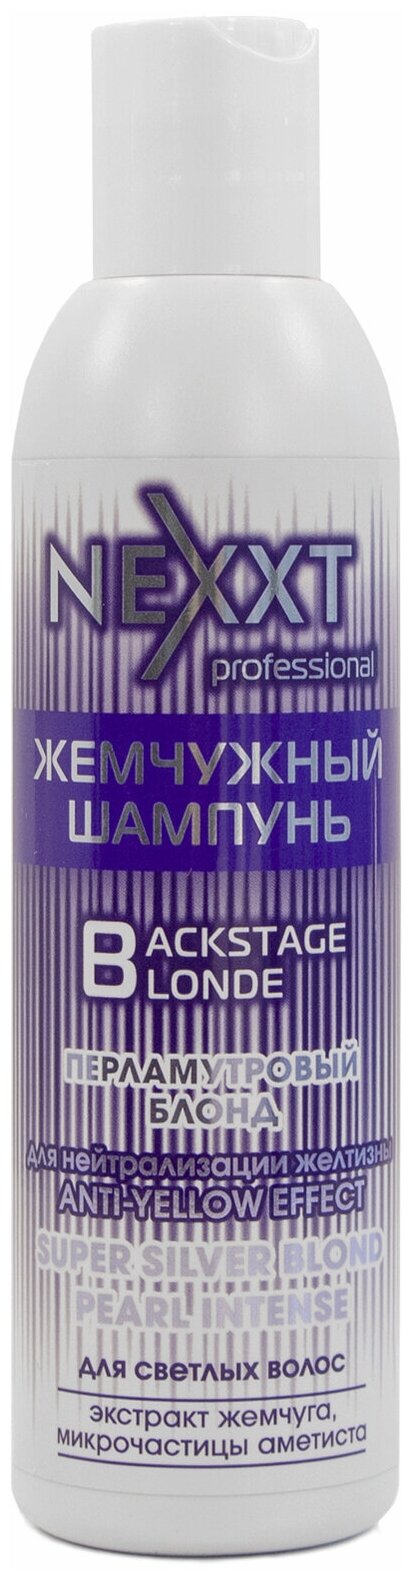 Nexprof/Жемчужный шампунь "Перламутровый блонд",200 мл